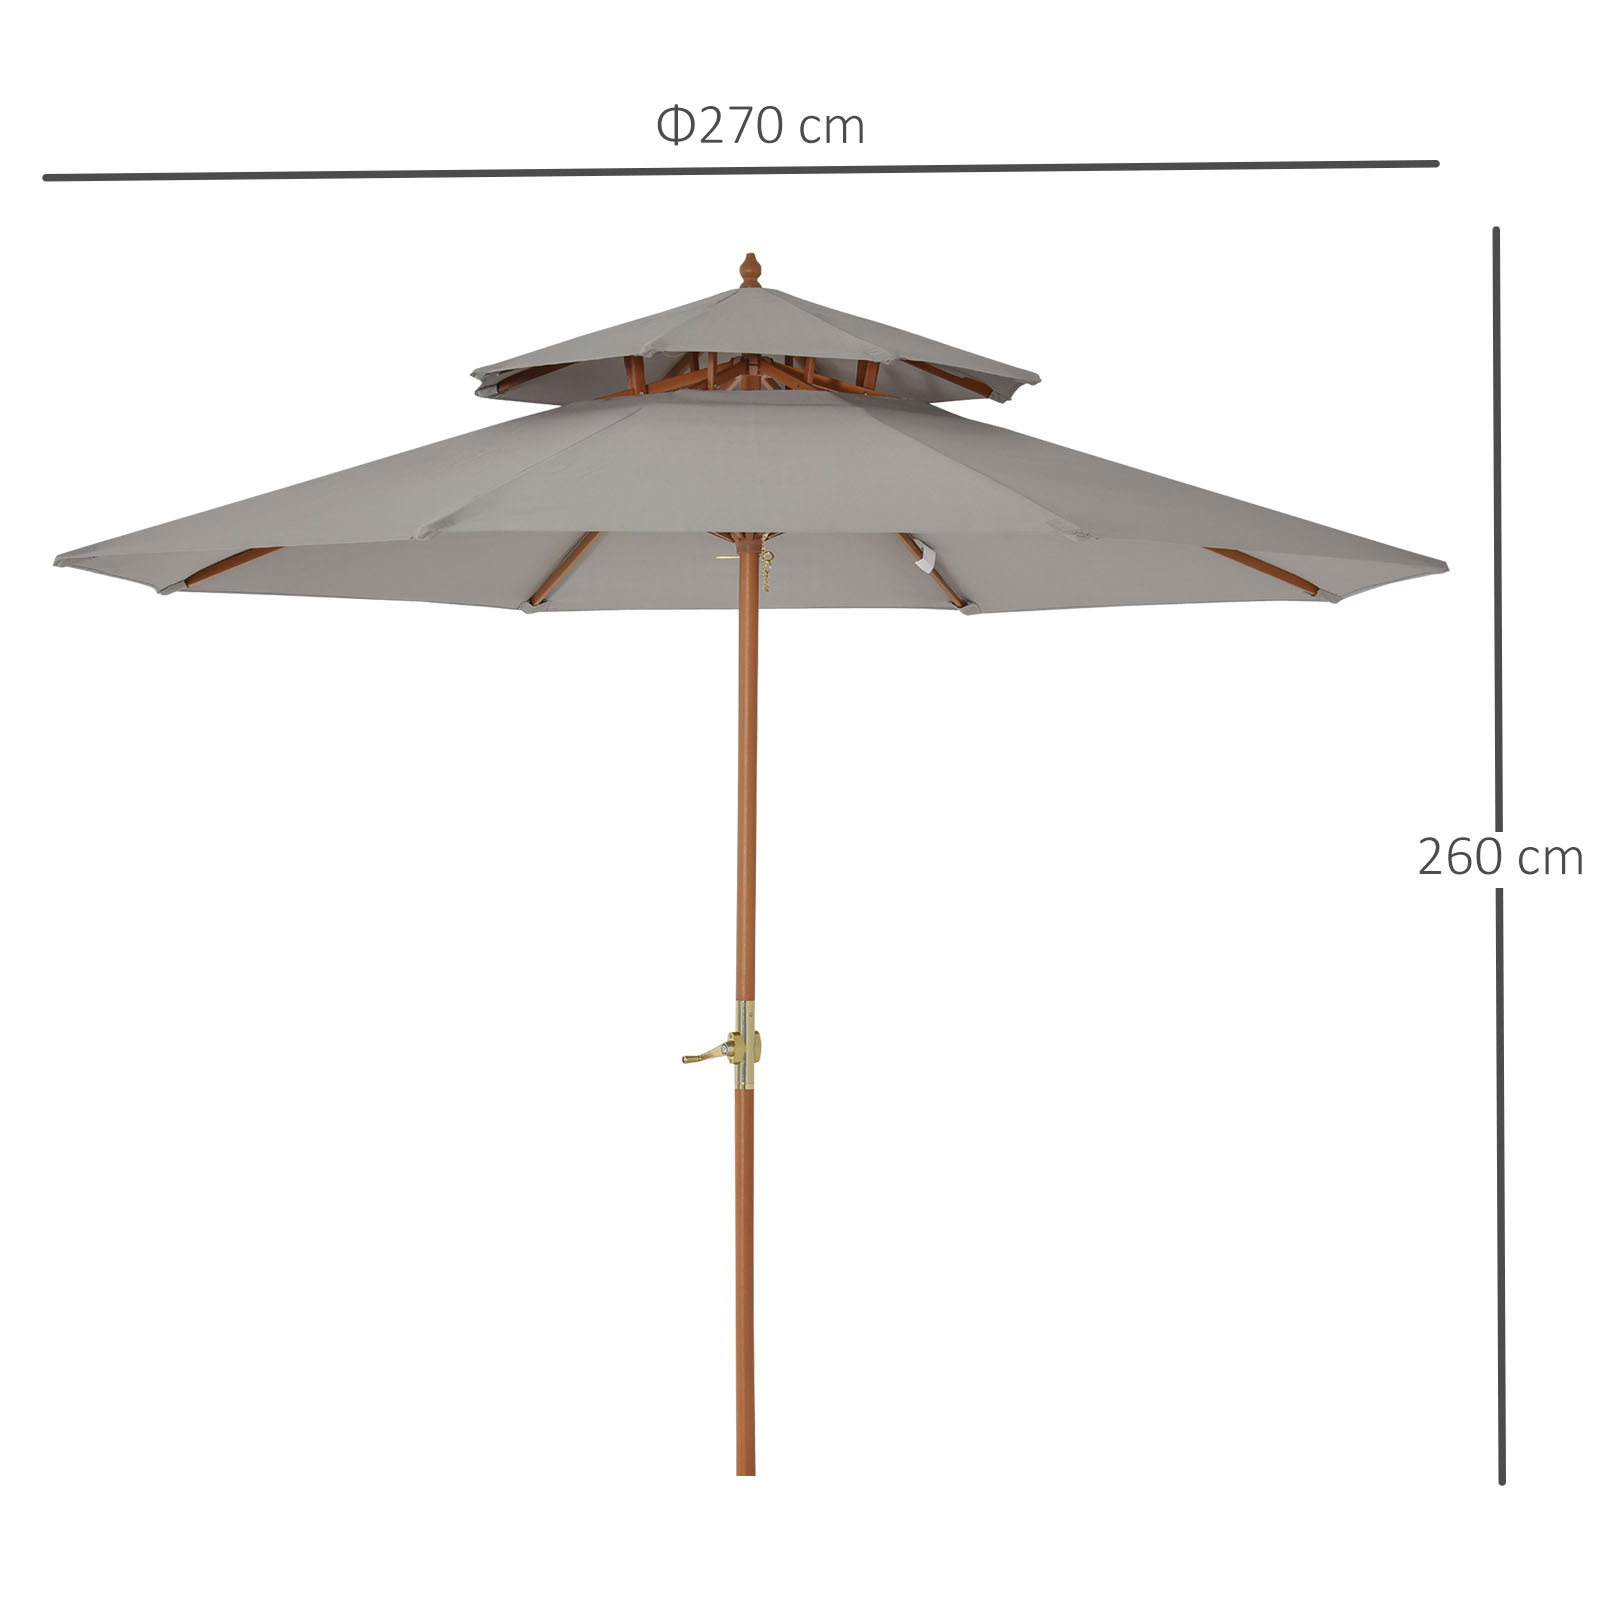 Outsunny 2.7 m Patio Parasol Double Tier Garden Umbrellas Outdoor Sun Umbrella Sunshade Bamboo Parasol, Grey